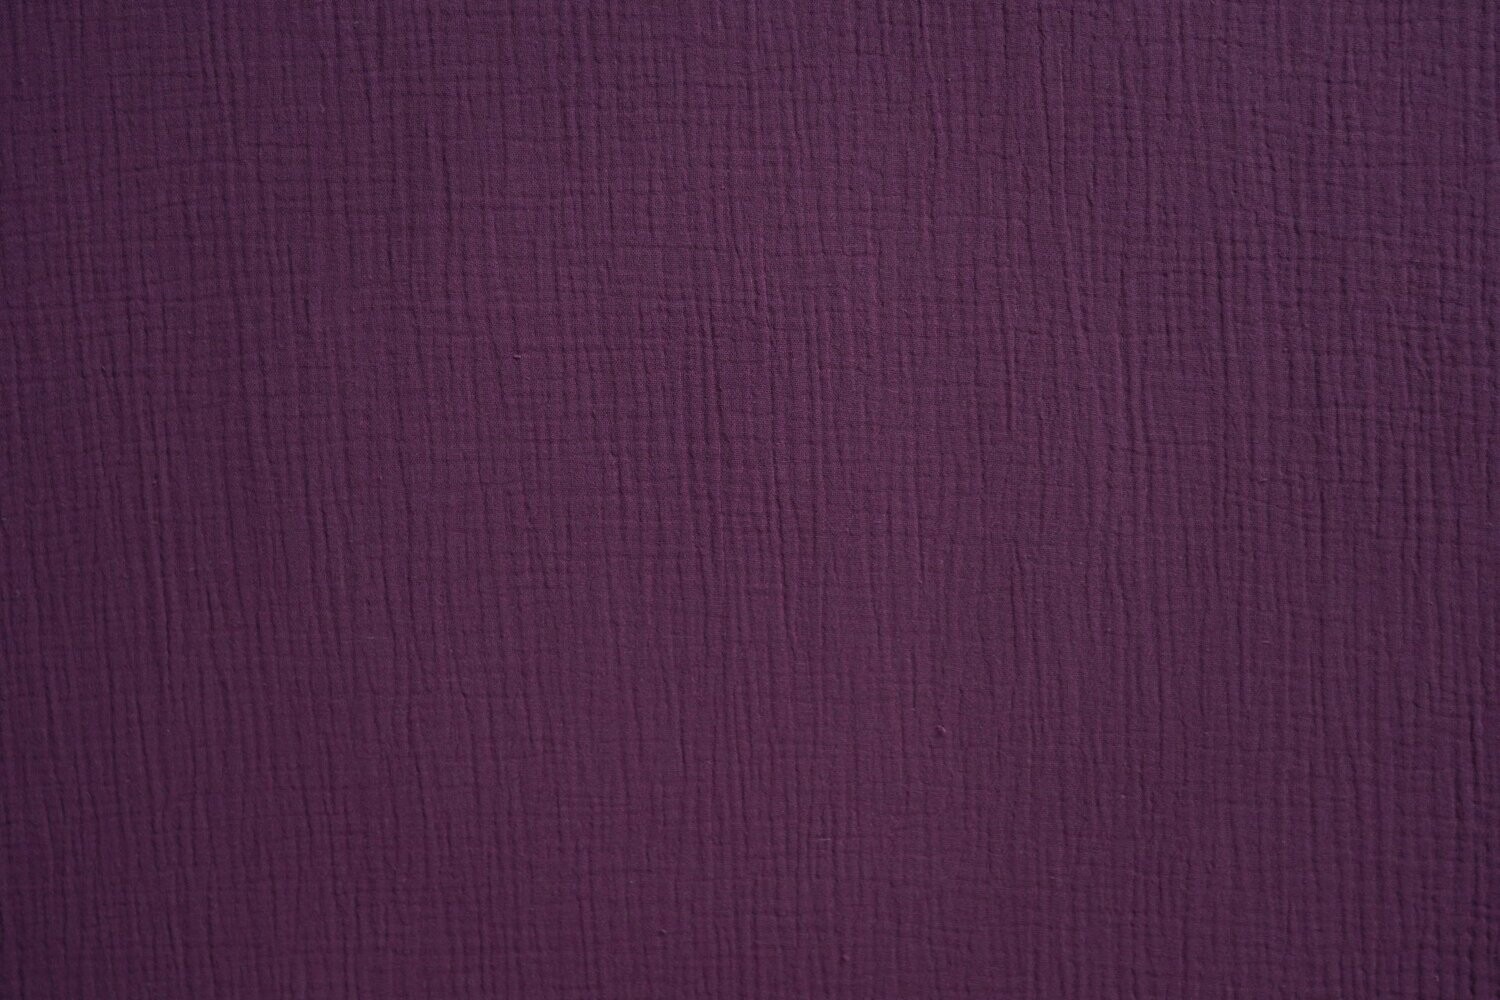 Baumwolle Musselinstoff Violett